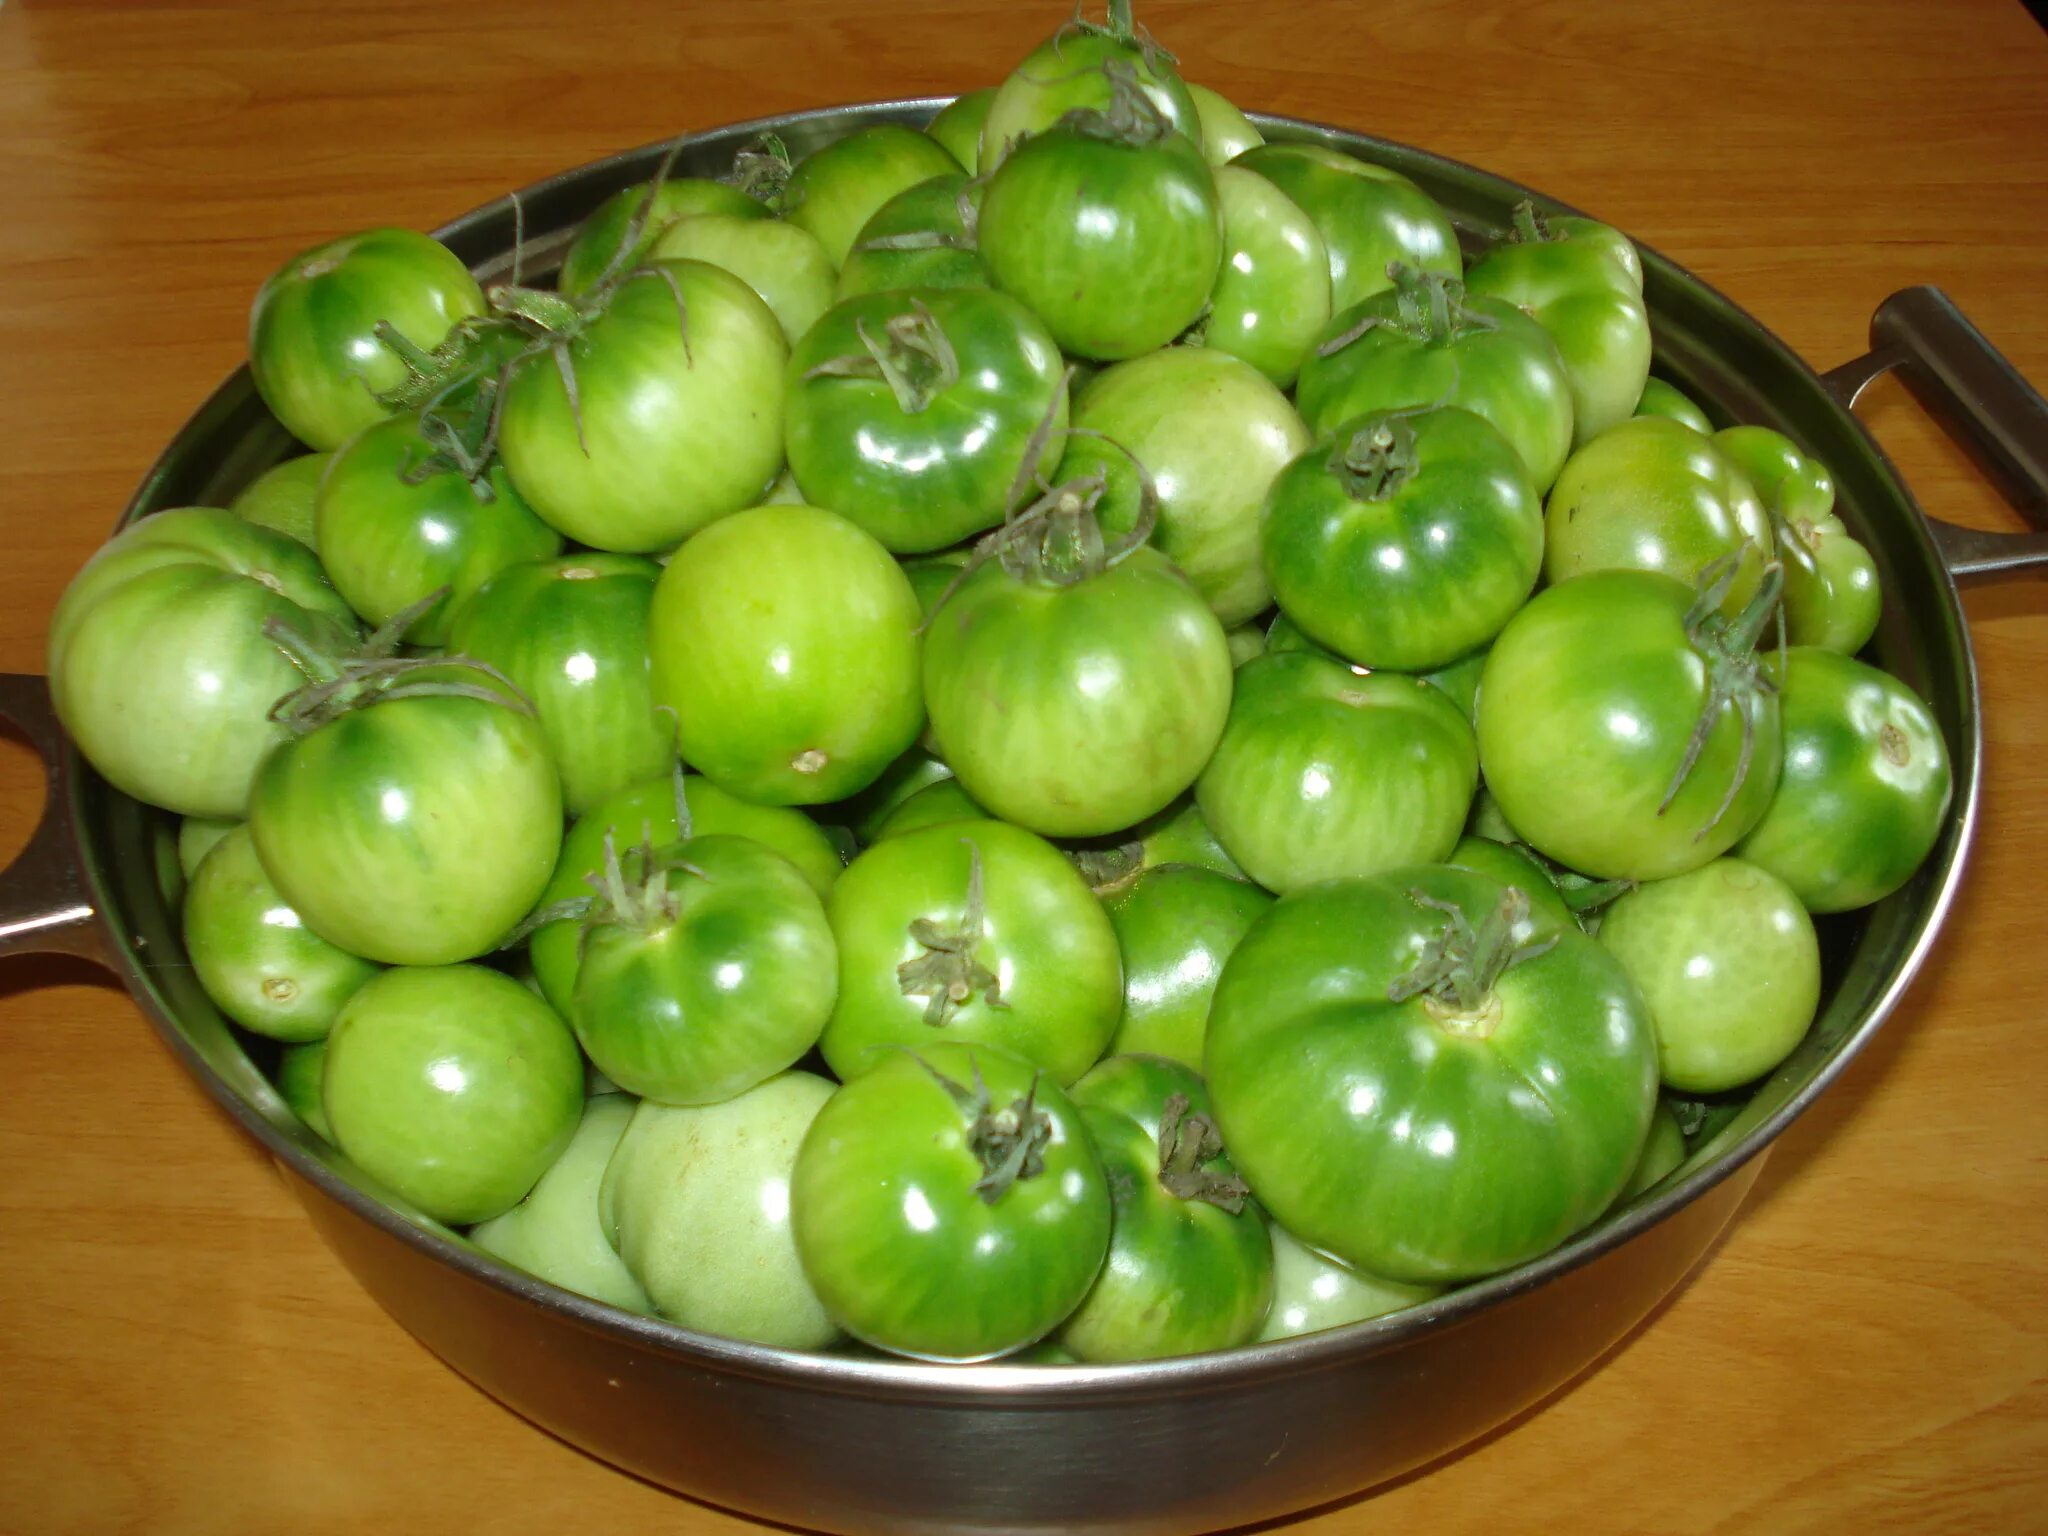 Купить зеленые томаты. Зеленые помидоры. Помидоры солёные зелёные. Мелкие зелёные помидоры. Зелёные помидоры быстрого приготовления в кастрюле.